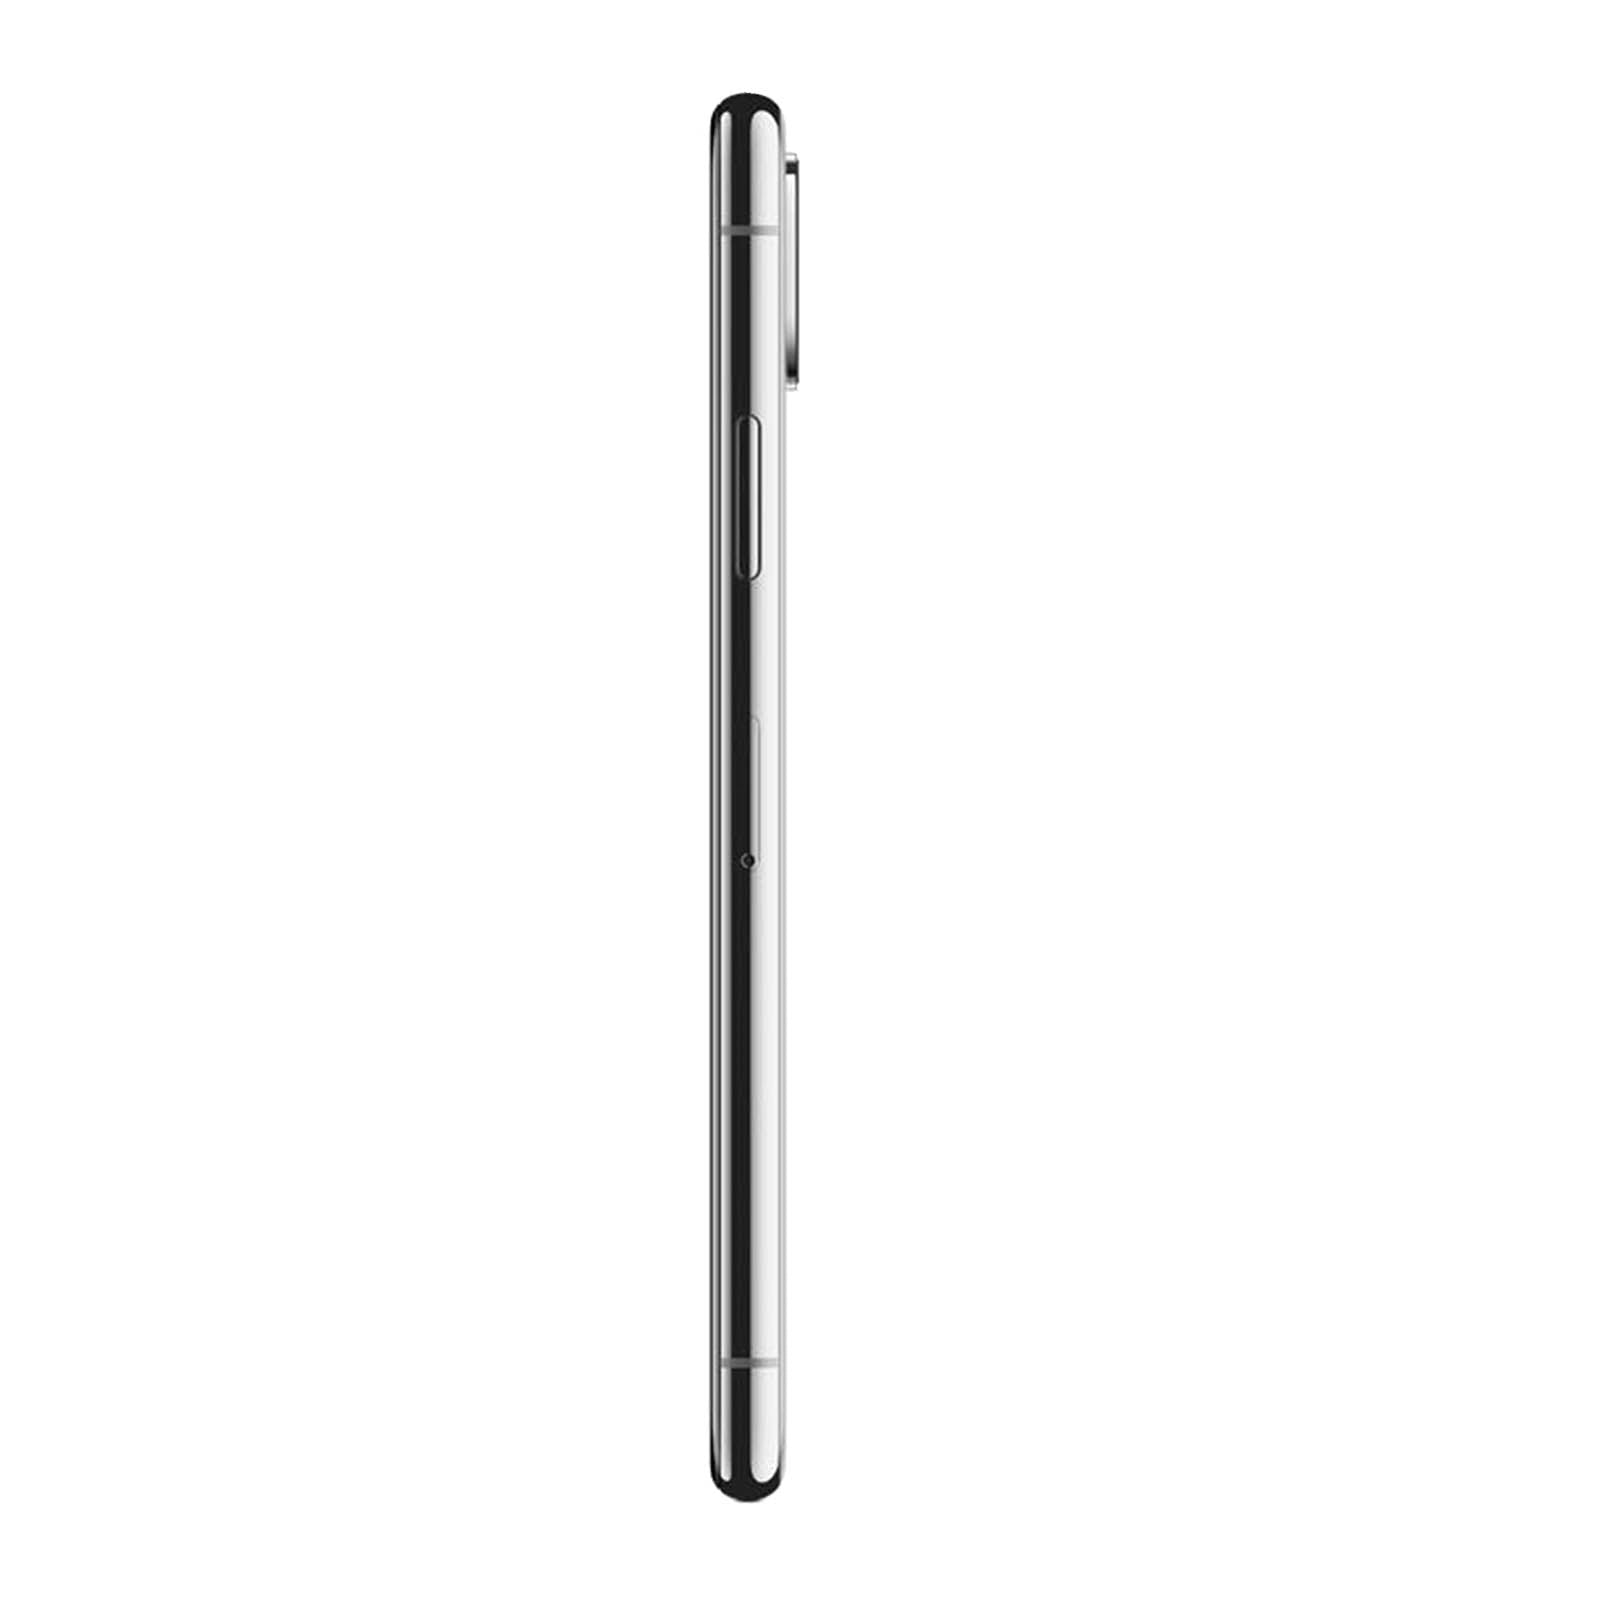 Apple iPhone XS Max - 512GB - Space Grey- Unlocked – Loop Mobile